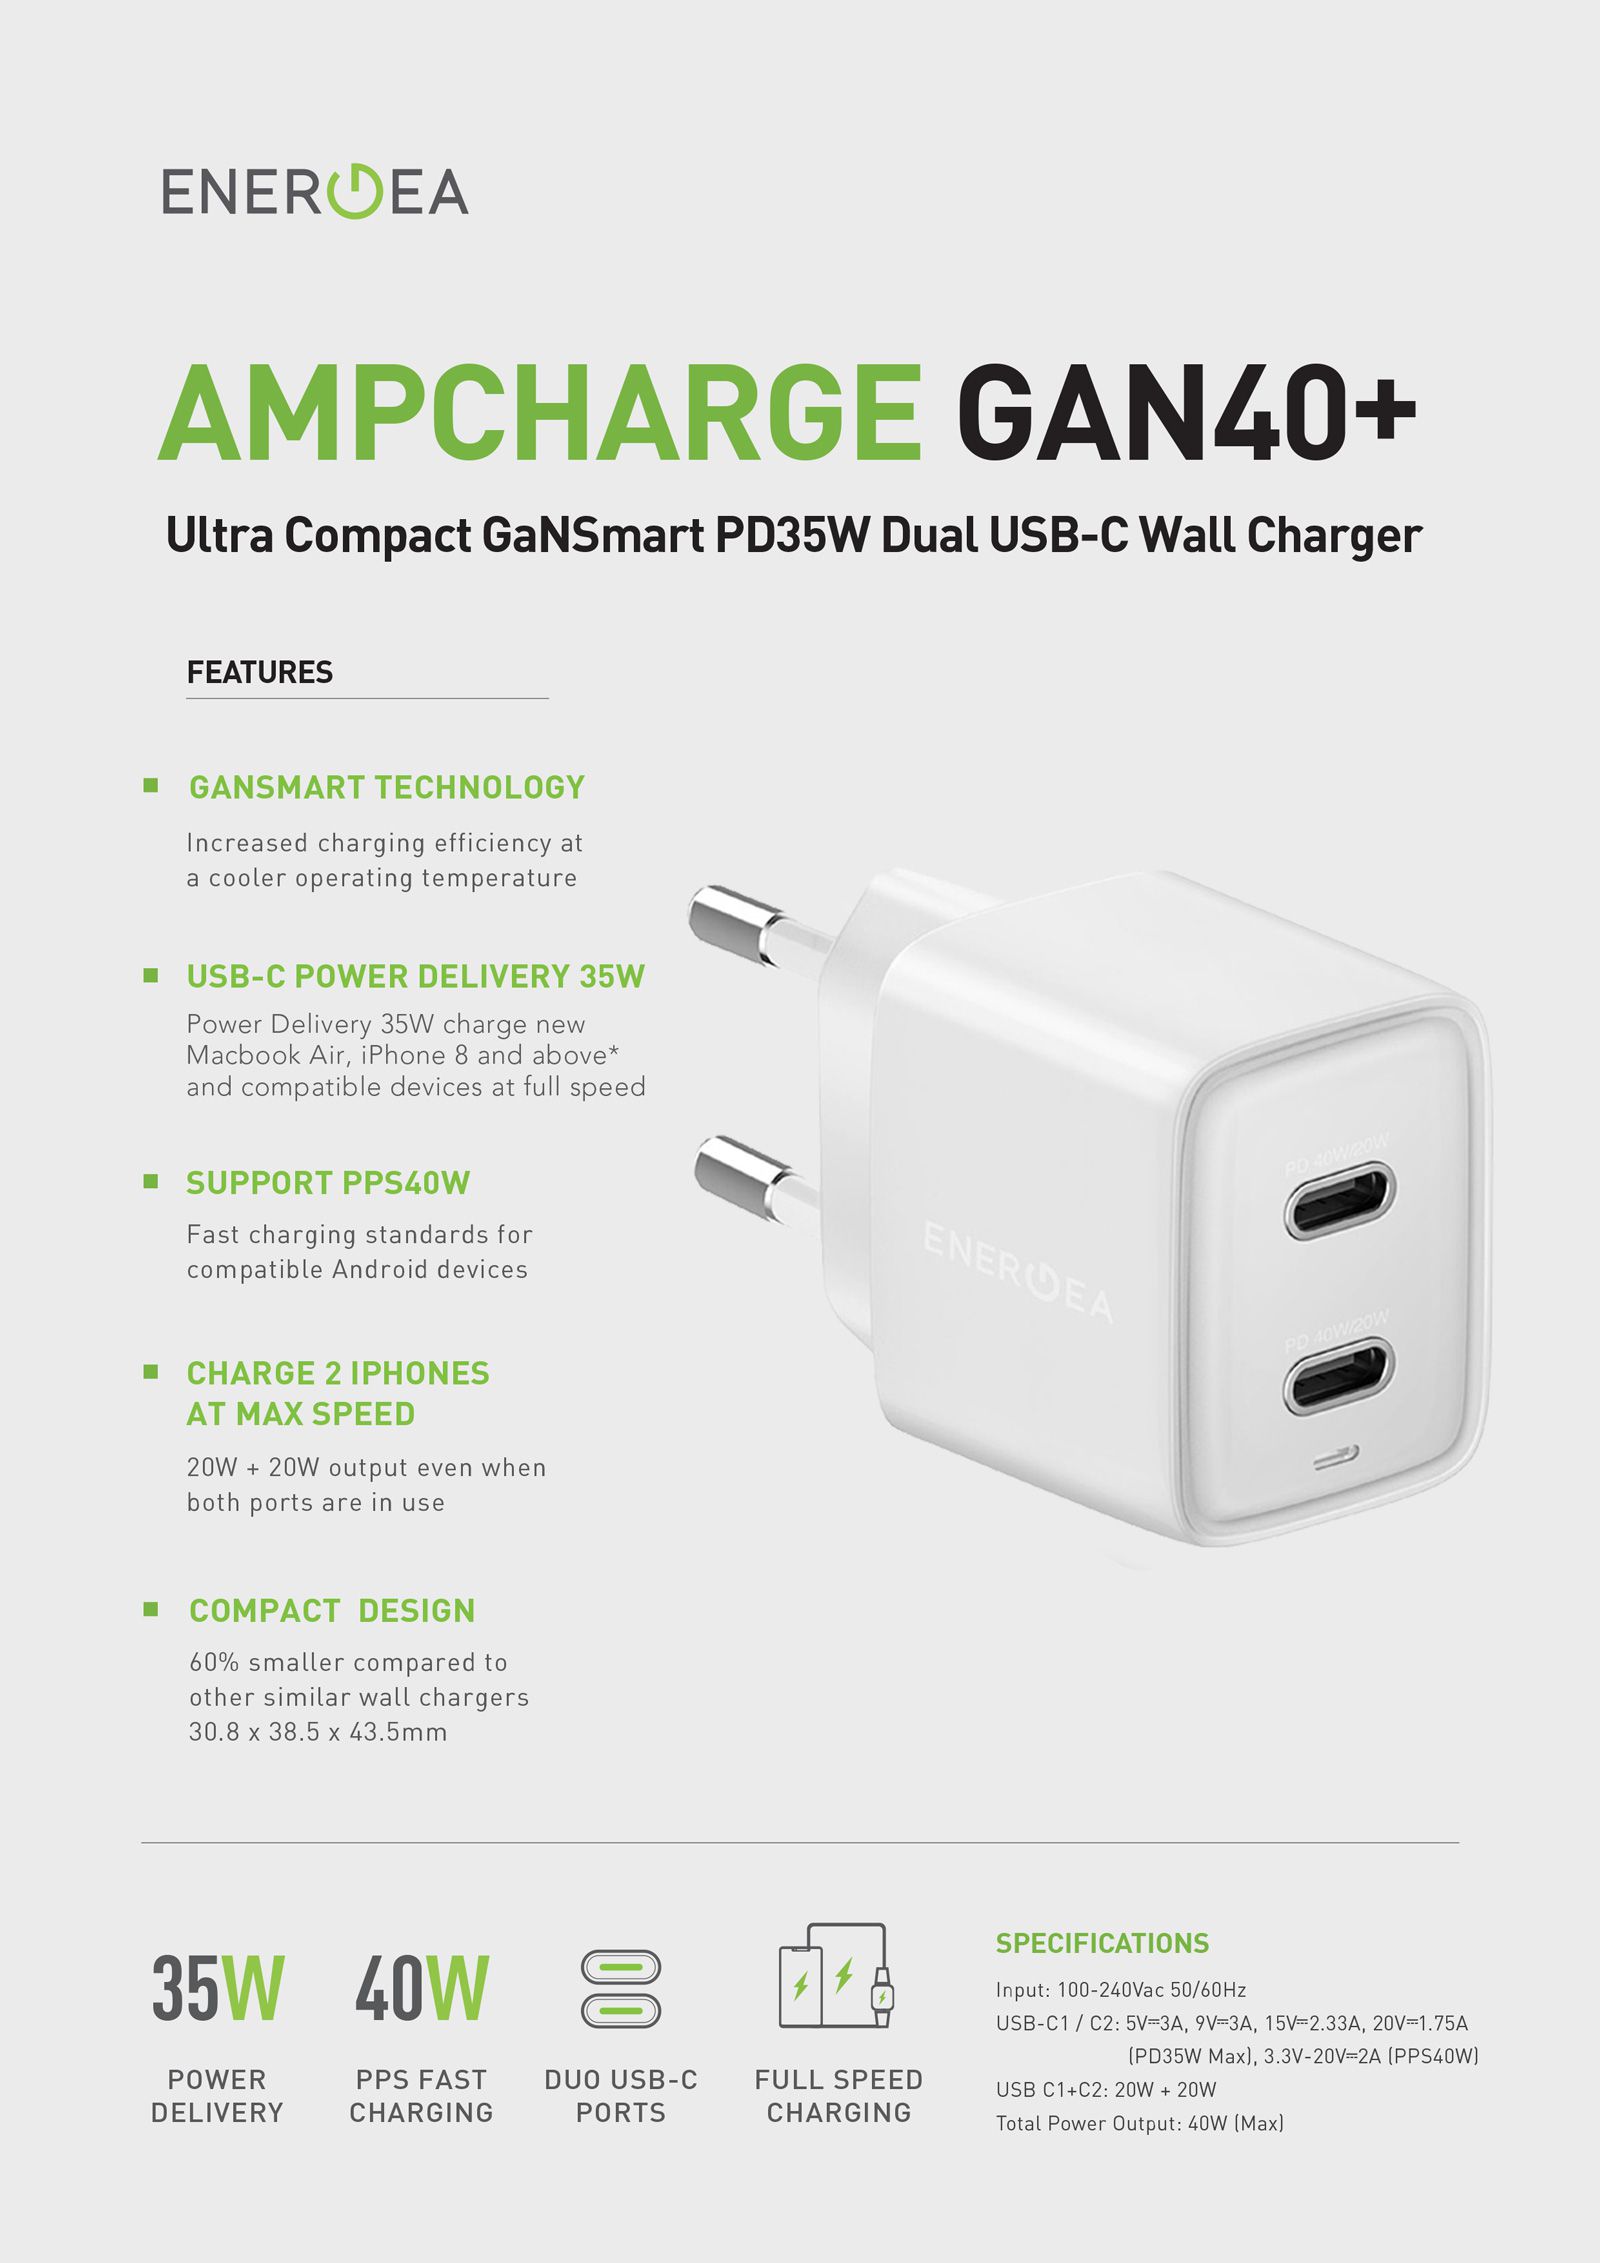 مشخصات و اطلاعت فنی Energea AMPCHARG GaN40 Plus